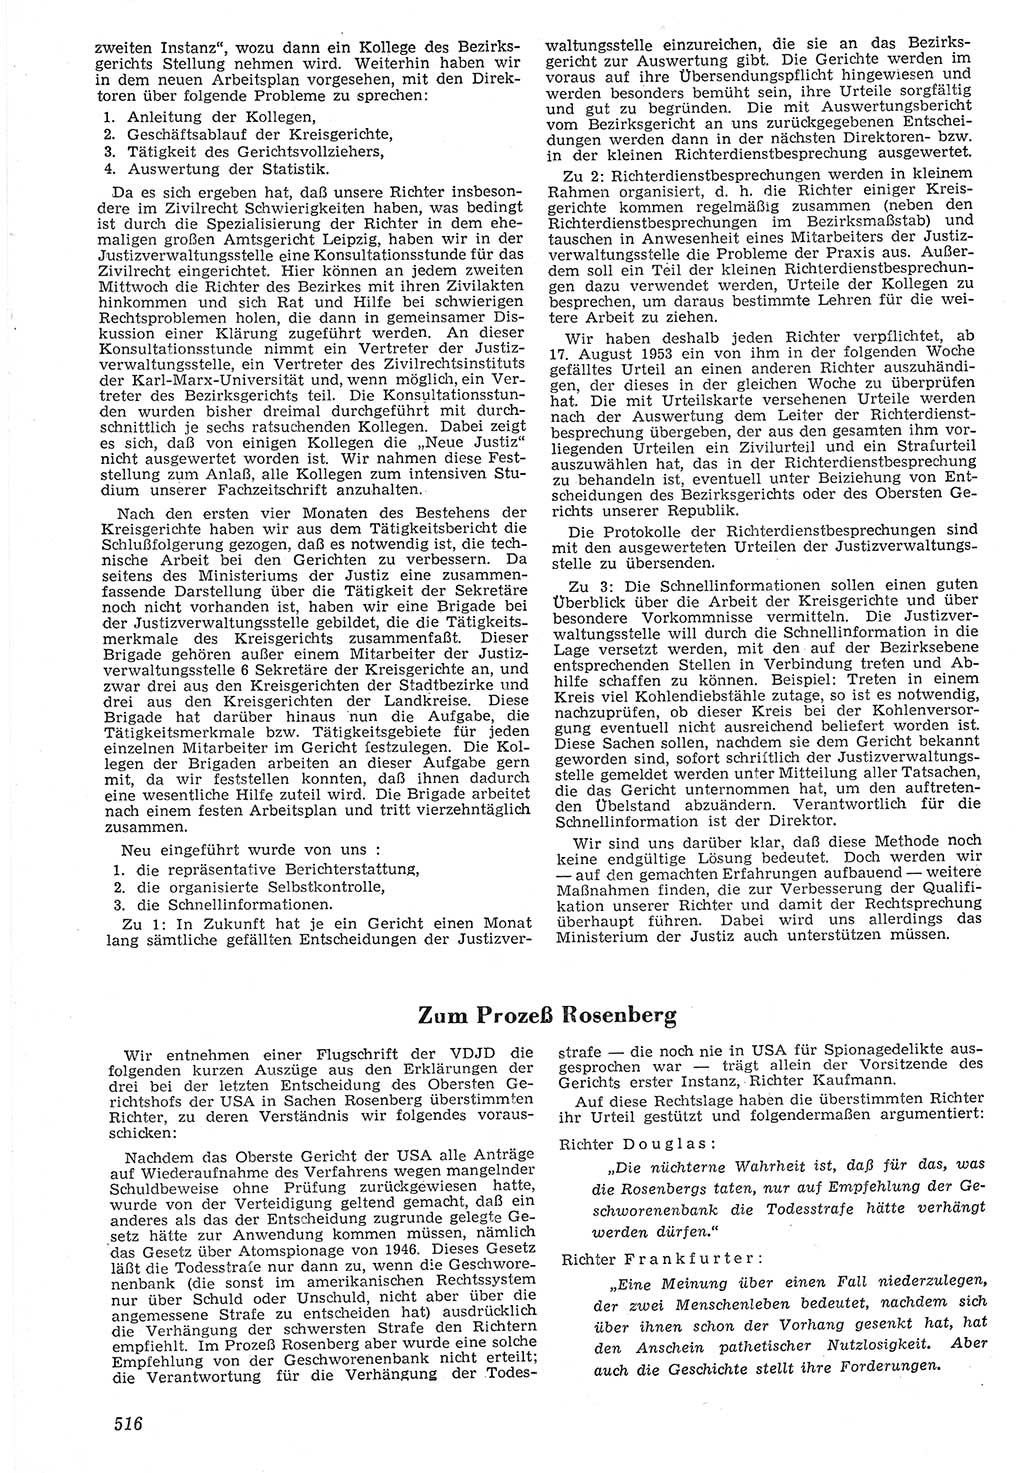 Neue Justiz (NJ), Zeitschrift für Recht und Rechtswissenschaft [Deutsche Demokratische Republik (DDR)], 7. Jahrgang 1953, Seite 516 (NJ DDR 1953, S. 516)